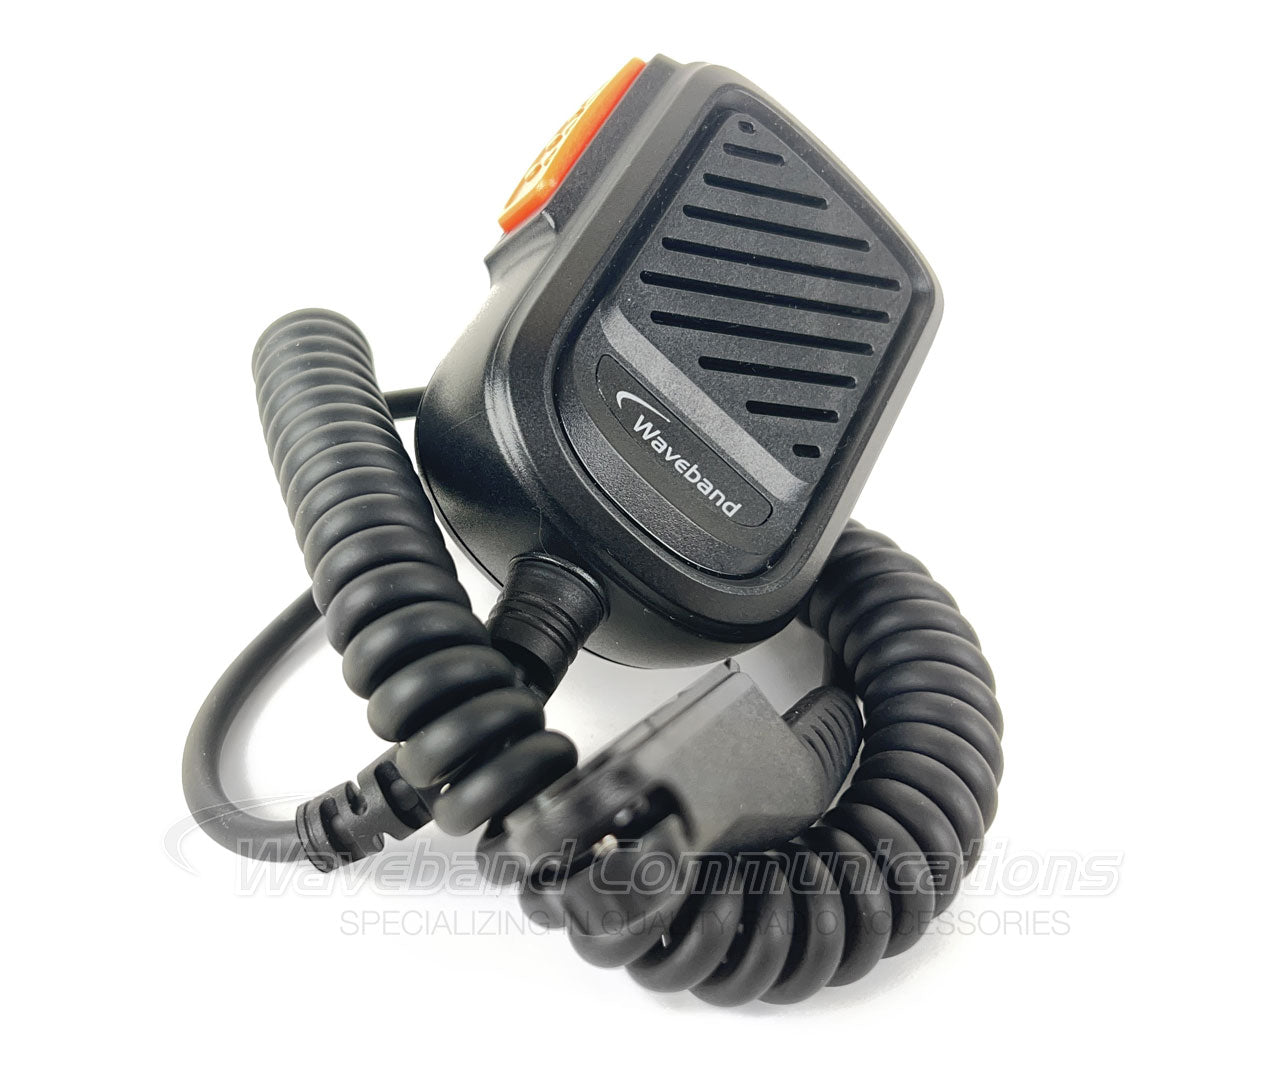 Motorola pmmn4140 kompatibles Hochleistungslautsprechermikrofon zur Verwendung mit Handheld -Radios der Motorola R7 -Serie